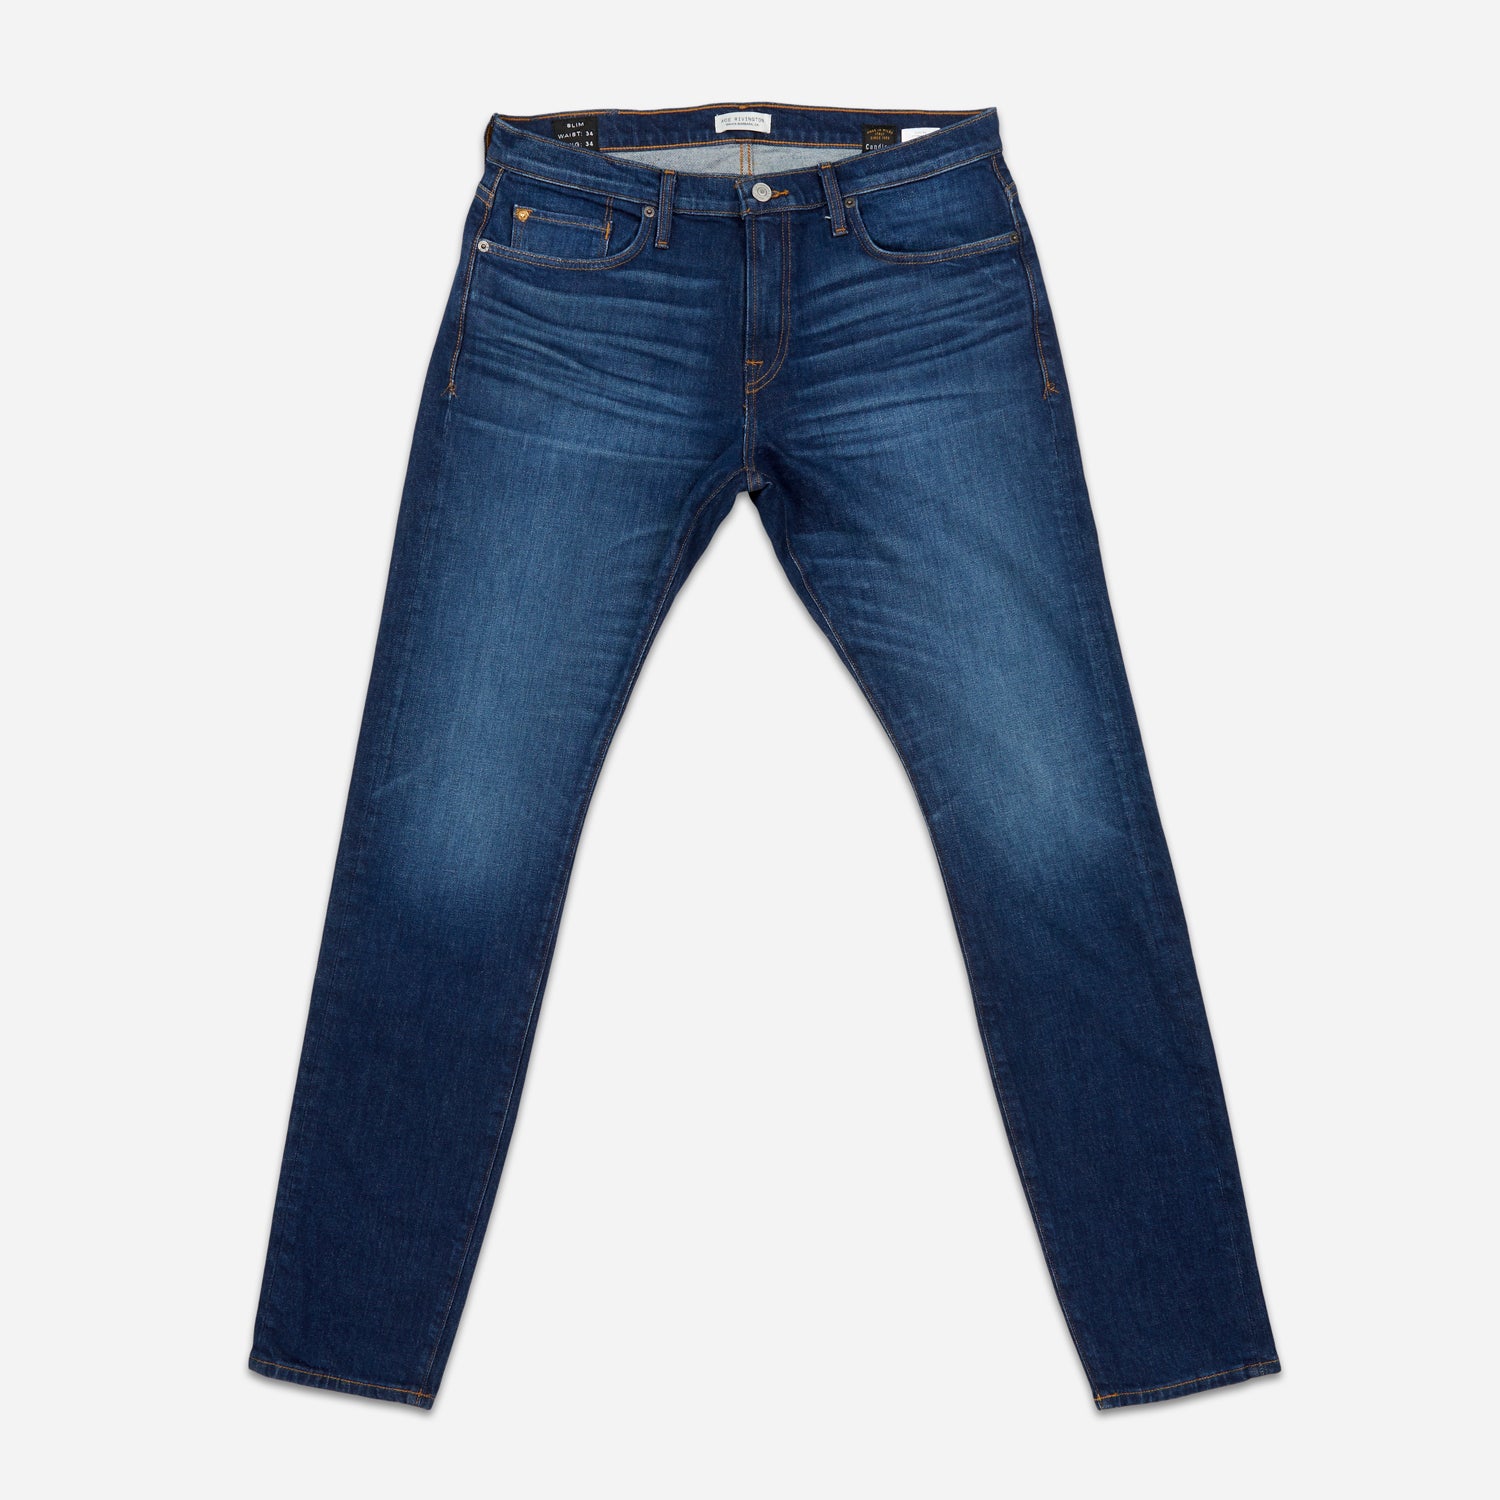 Shop Denim Jeans – Ace Rivington